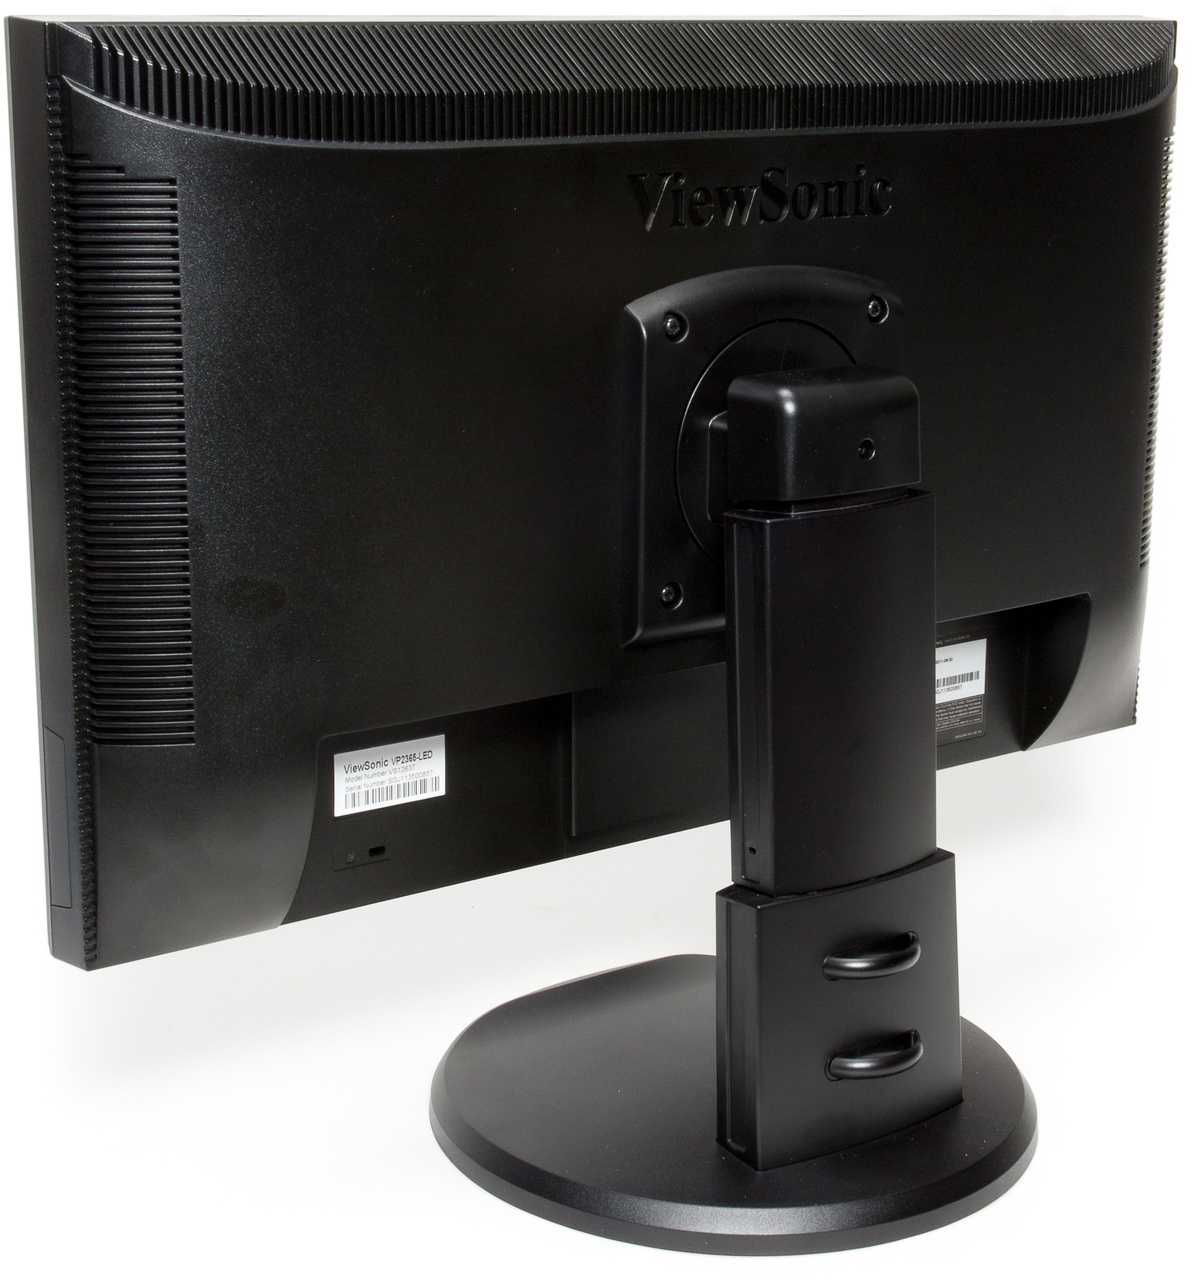 Viewsonic vp2365-led (черный) - купить , скидки, цена, отзывы, обзор, характеристики - мониторы